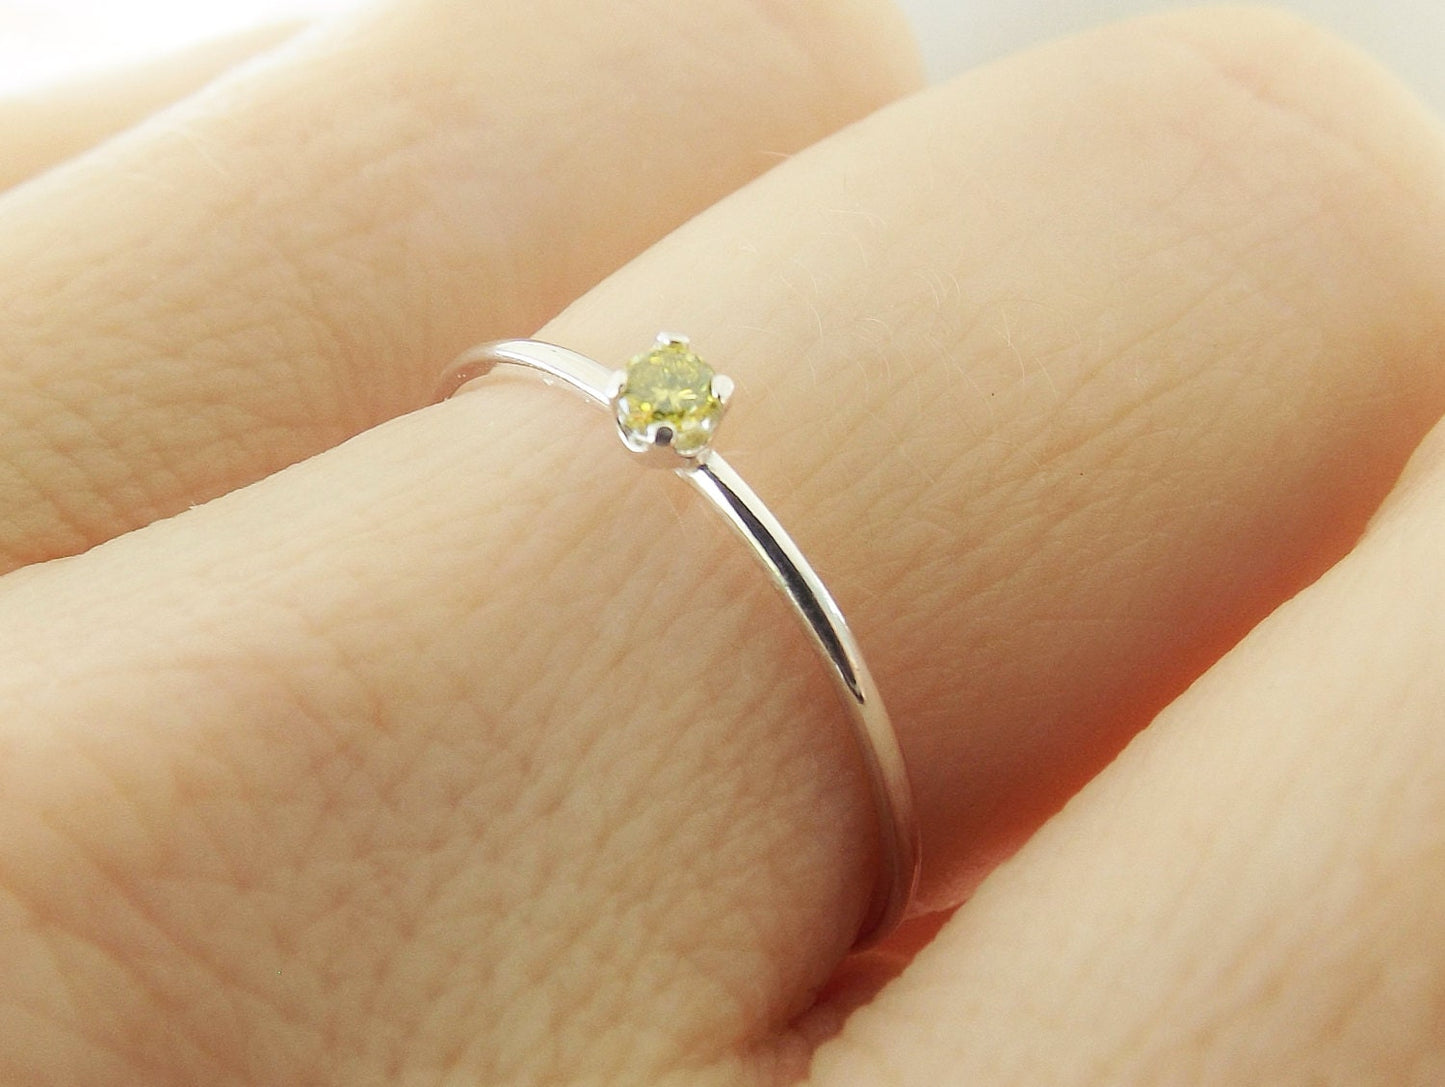 Yellow Diamond Ring, Genuine Diamond Ring, Yellow Diamond, Slim Ring, Minimalist Ring, Gift, Gemstone Ring, Tiny Diamond Ring, Diamond Ring